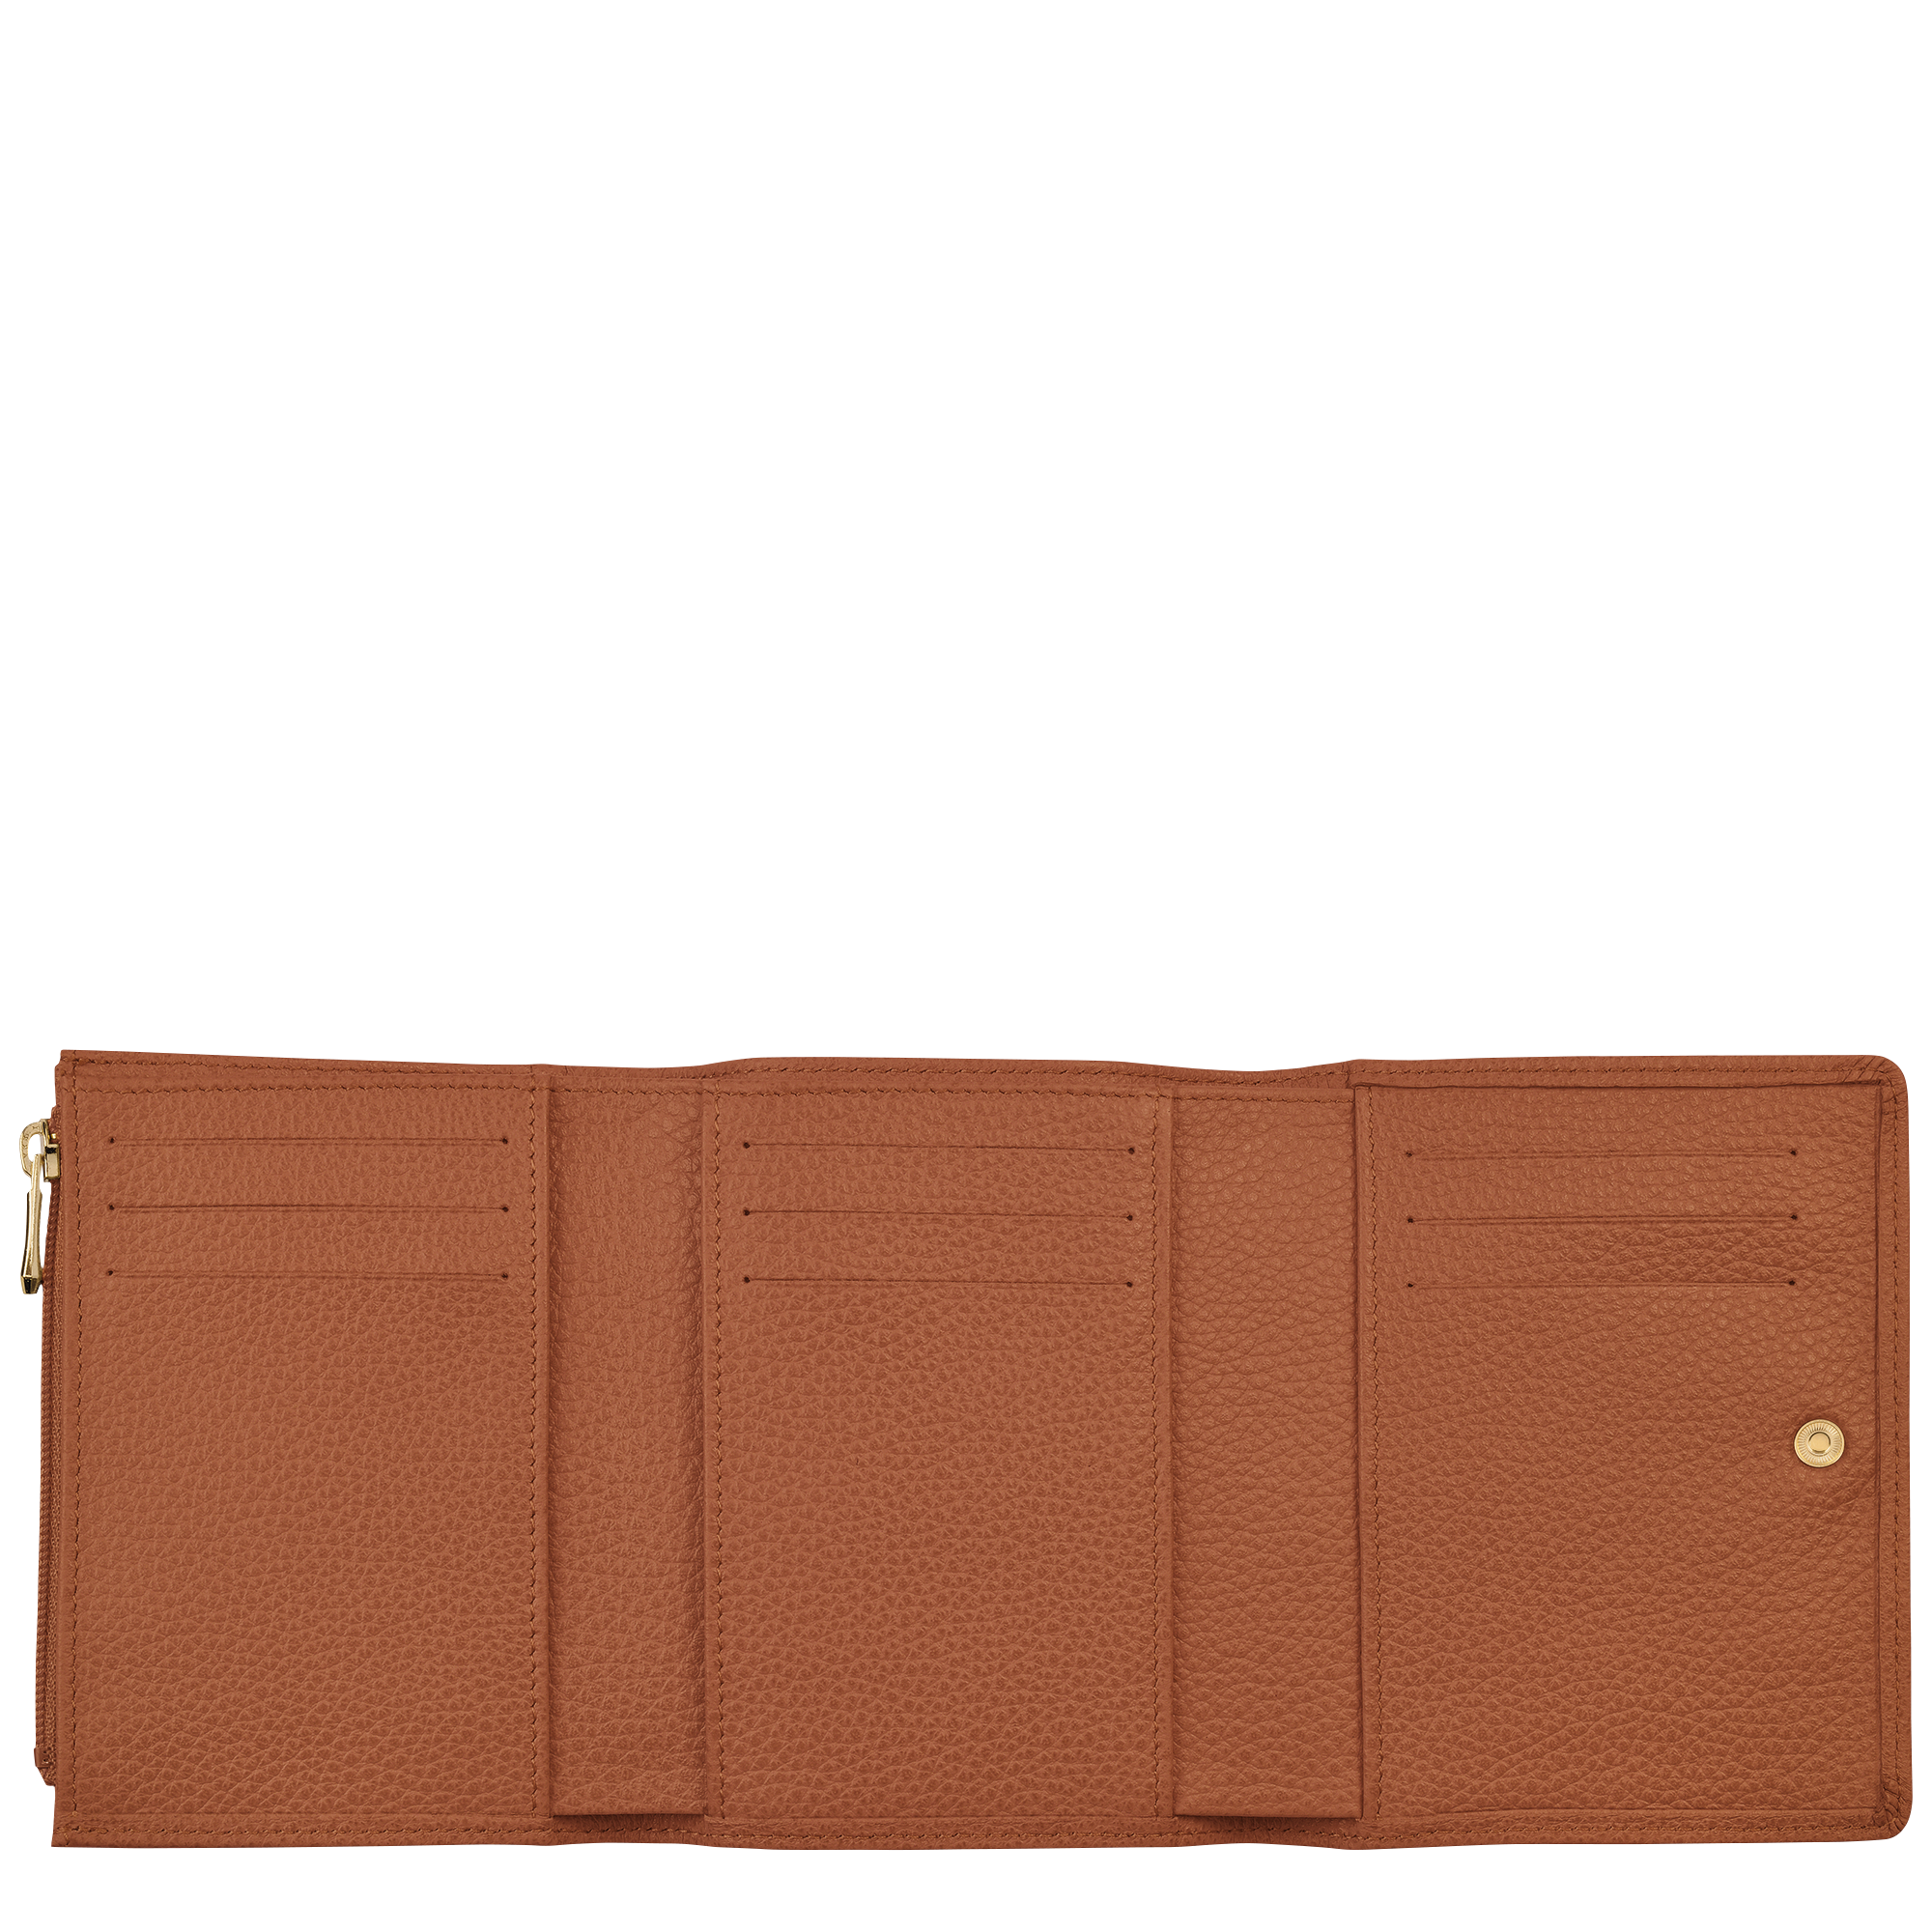 Le Foulonné 系列 小型錢包, 淡紅褐色